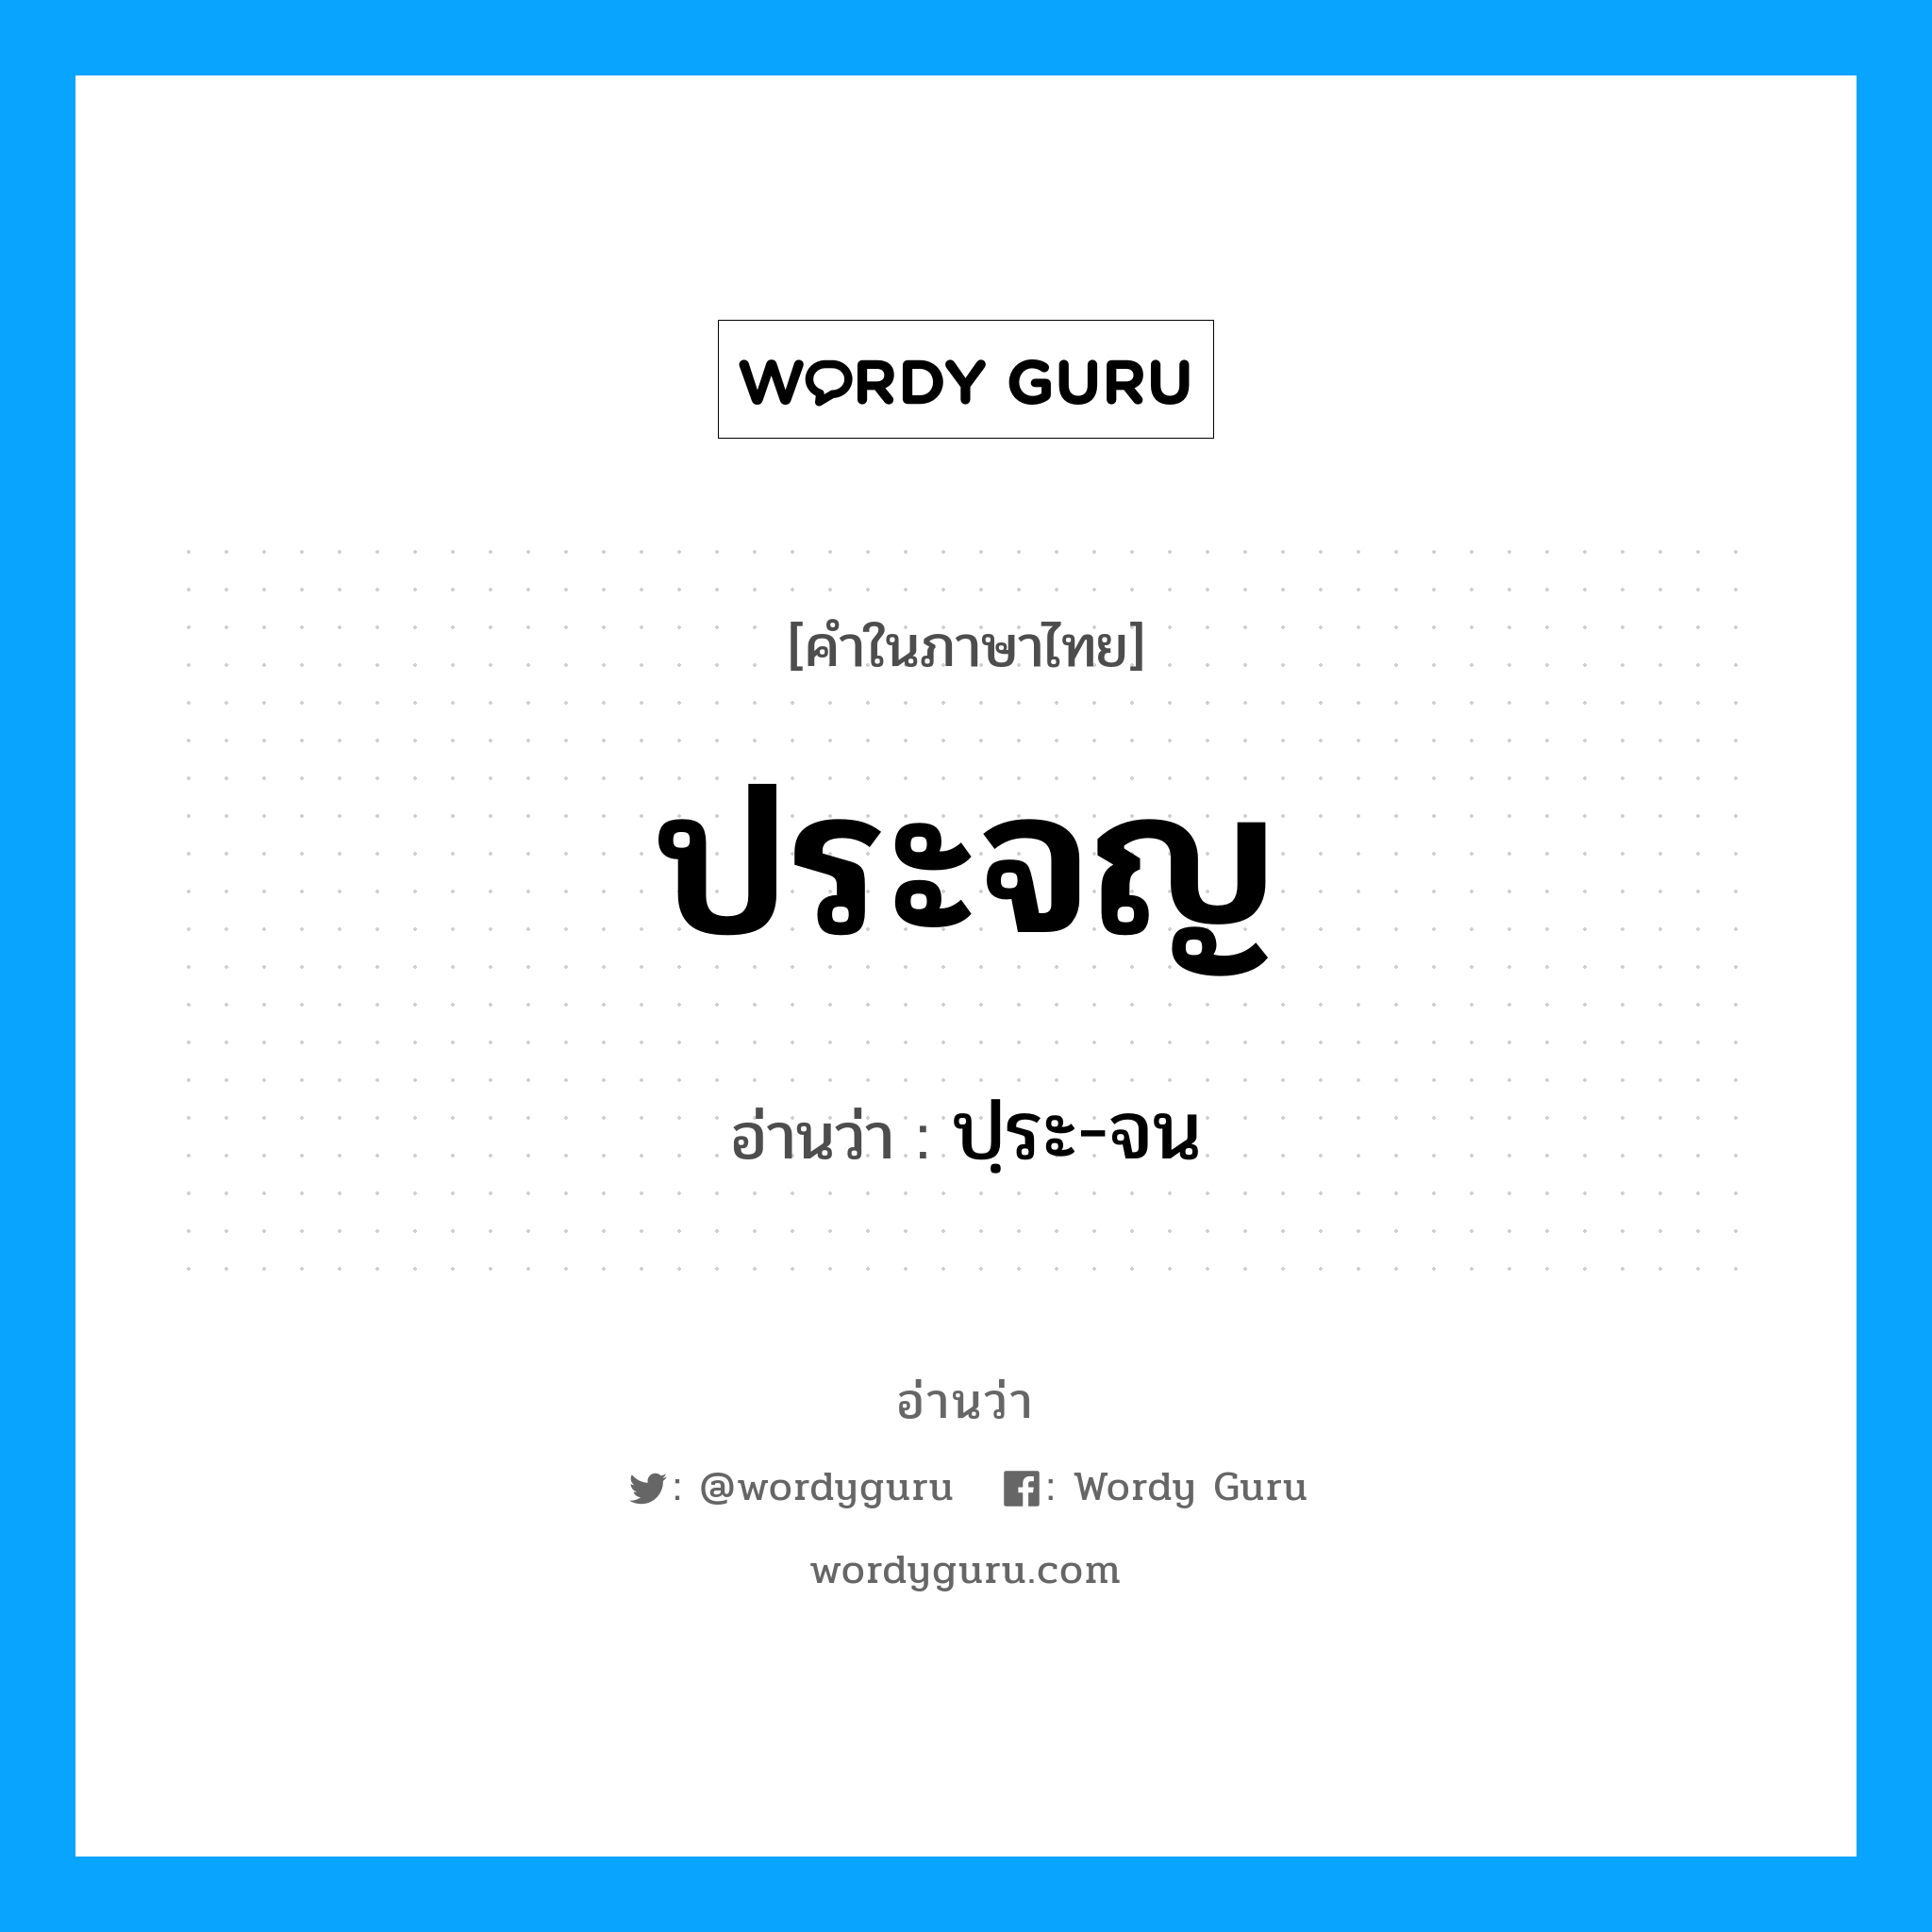 ปฺระ-จน เป็นคำอ่านของคำไหน?, คำในภาษาไทย ปฺระ-จน อ่านว่า ประจญ